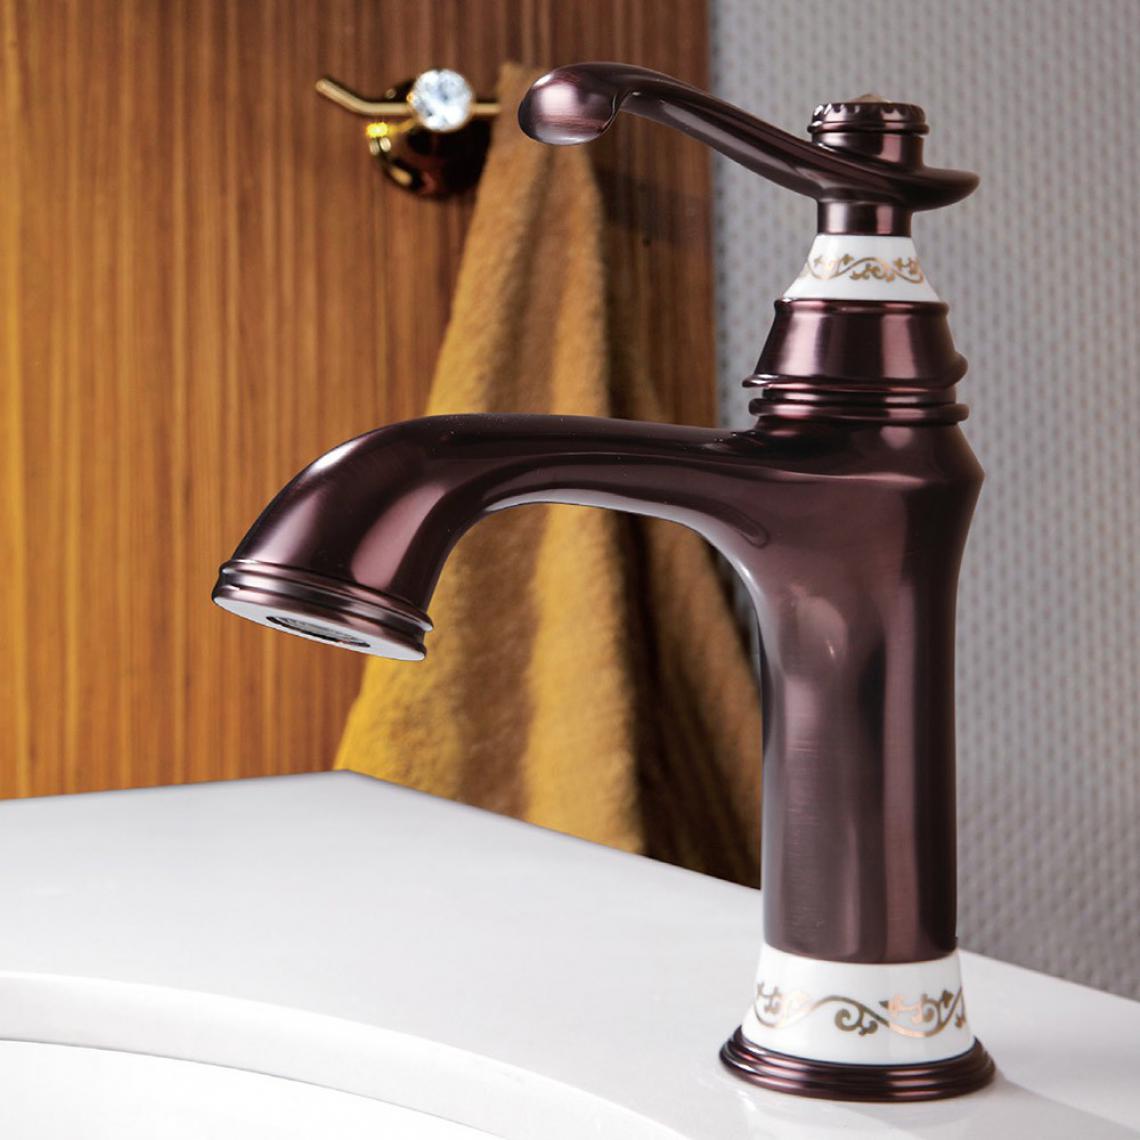 Lookshop - Robinet lavabo mitigeur style vintage en laiton massif cuivré - Robinet de lavabo